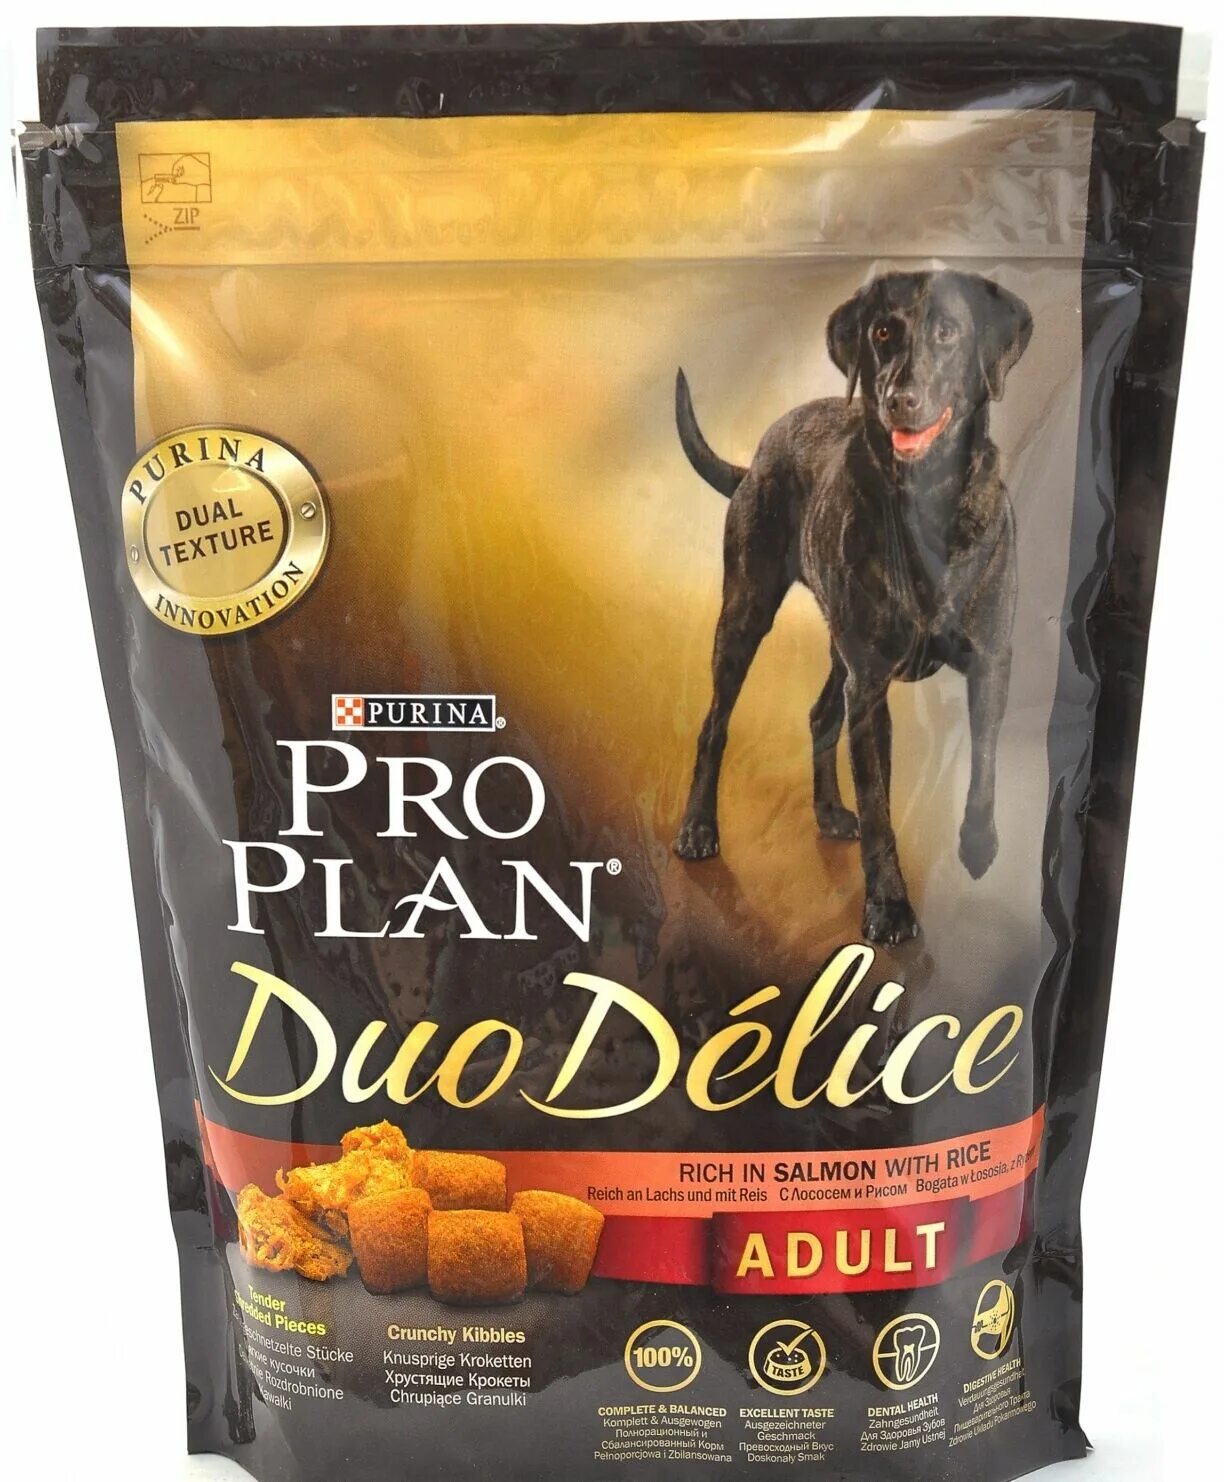 Пурина дуо Делис корм для собак. Pro Plan Duo Delice корм для собак. Корм Проплан  дуо Делис. Проплан дуо Делис для собак.